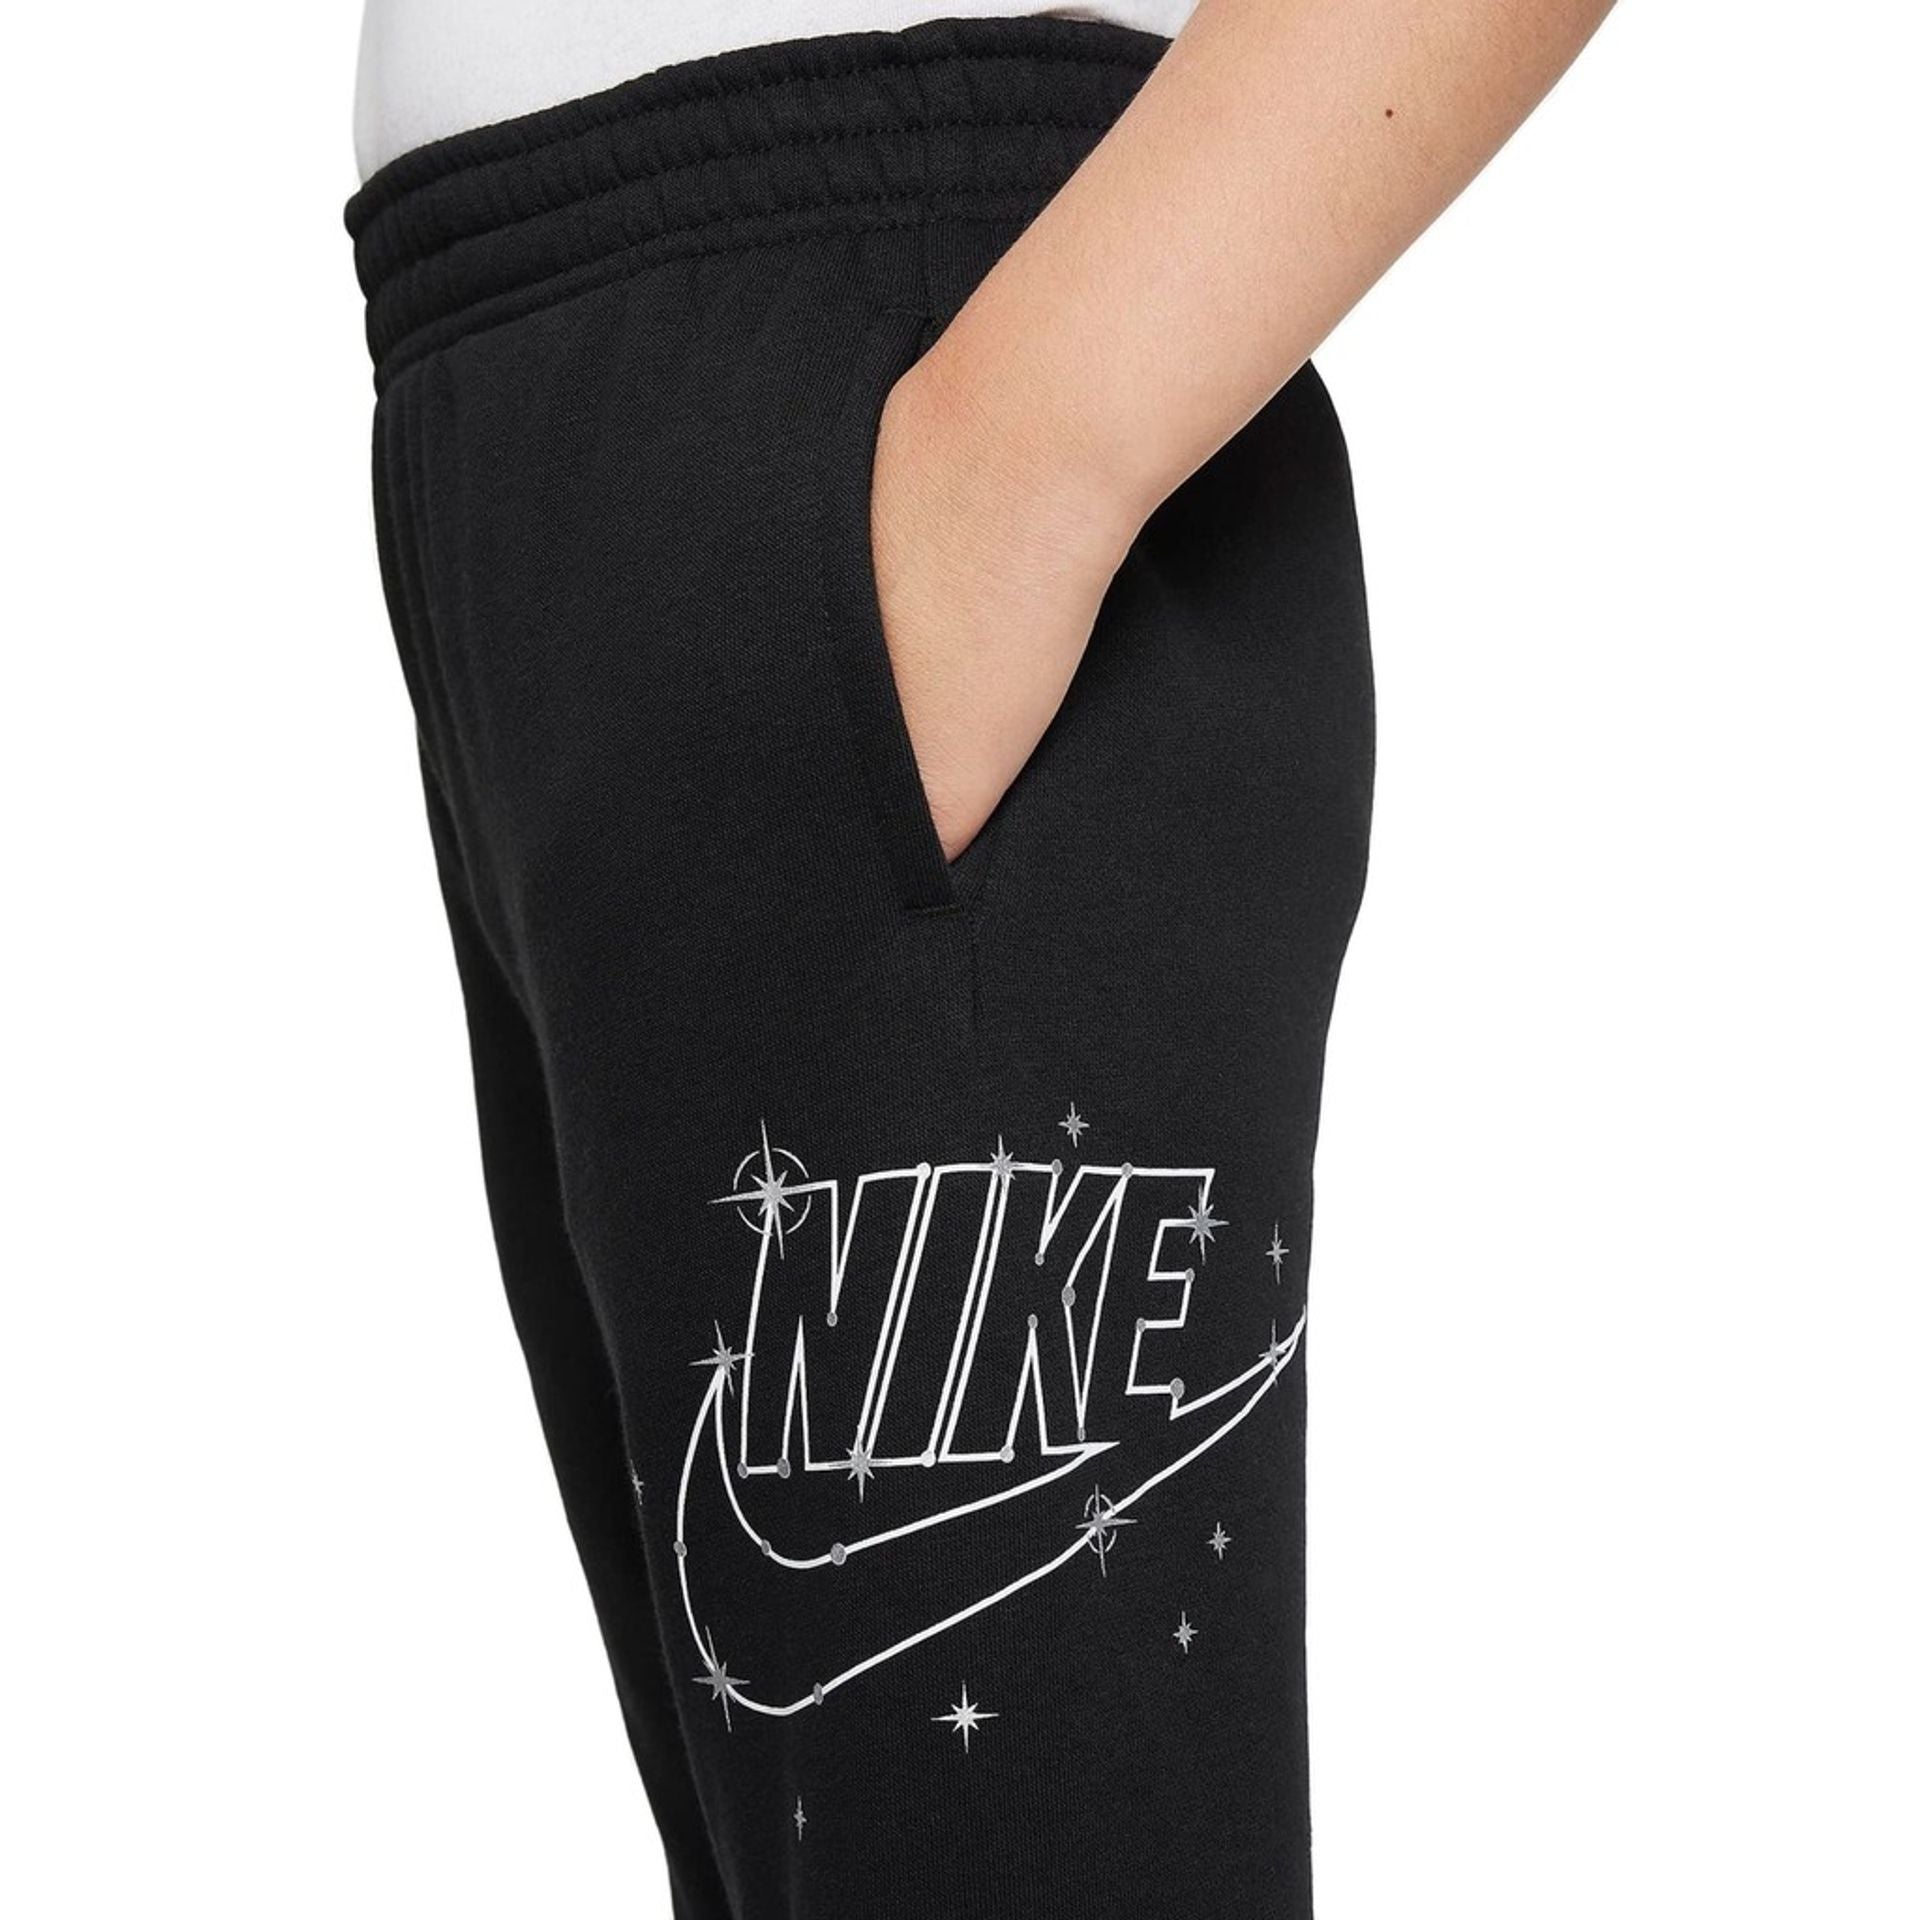 Nike Tracksuit pants